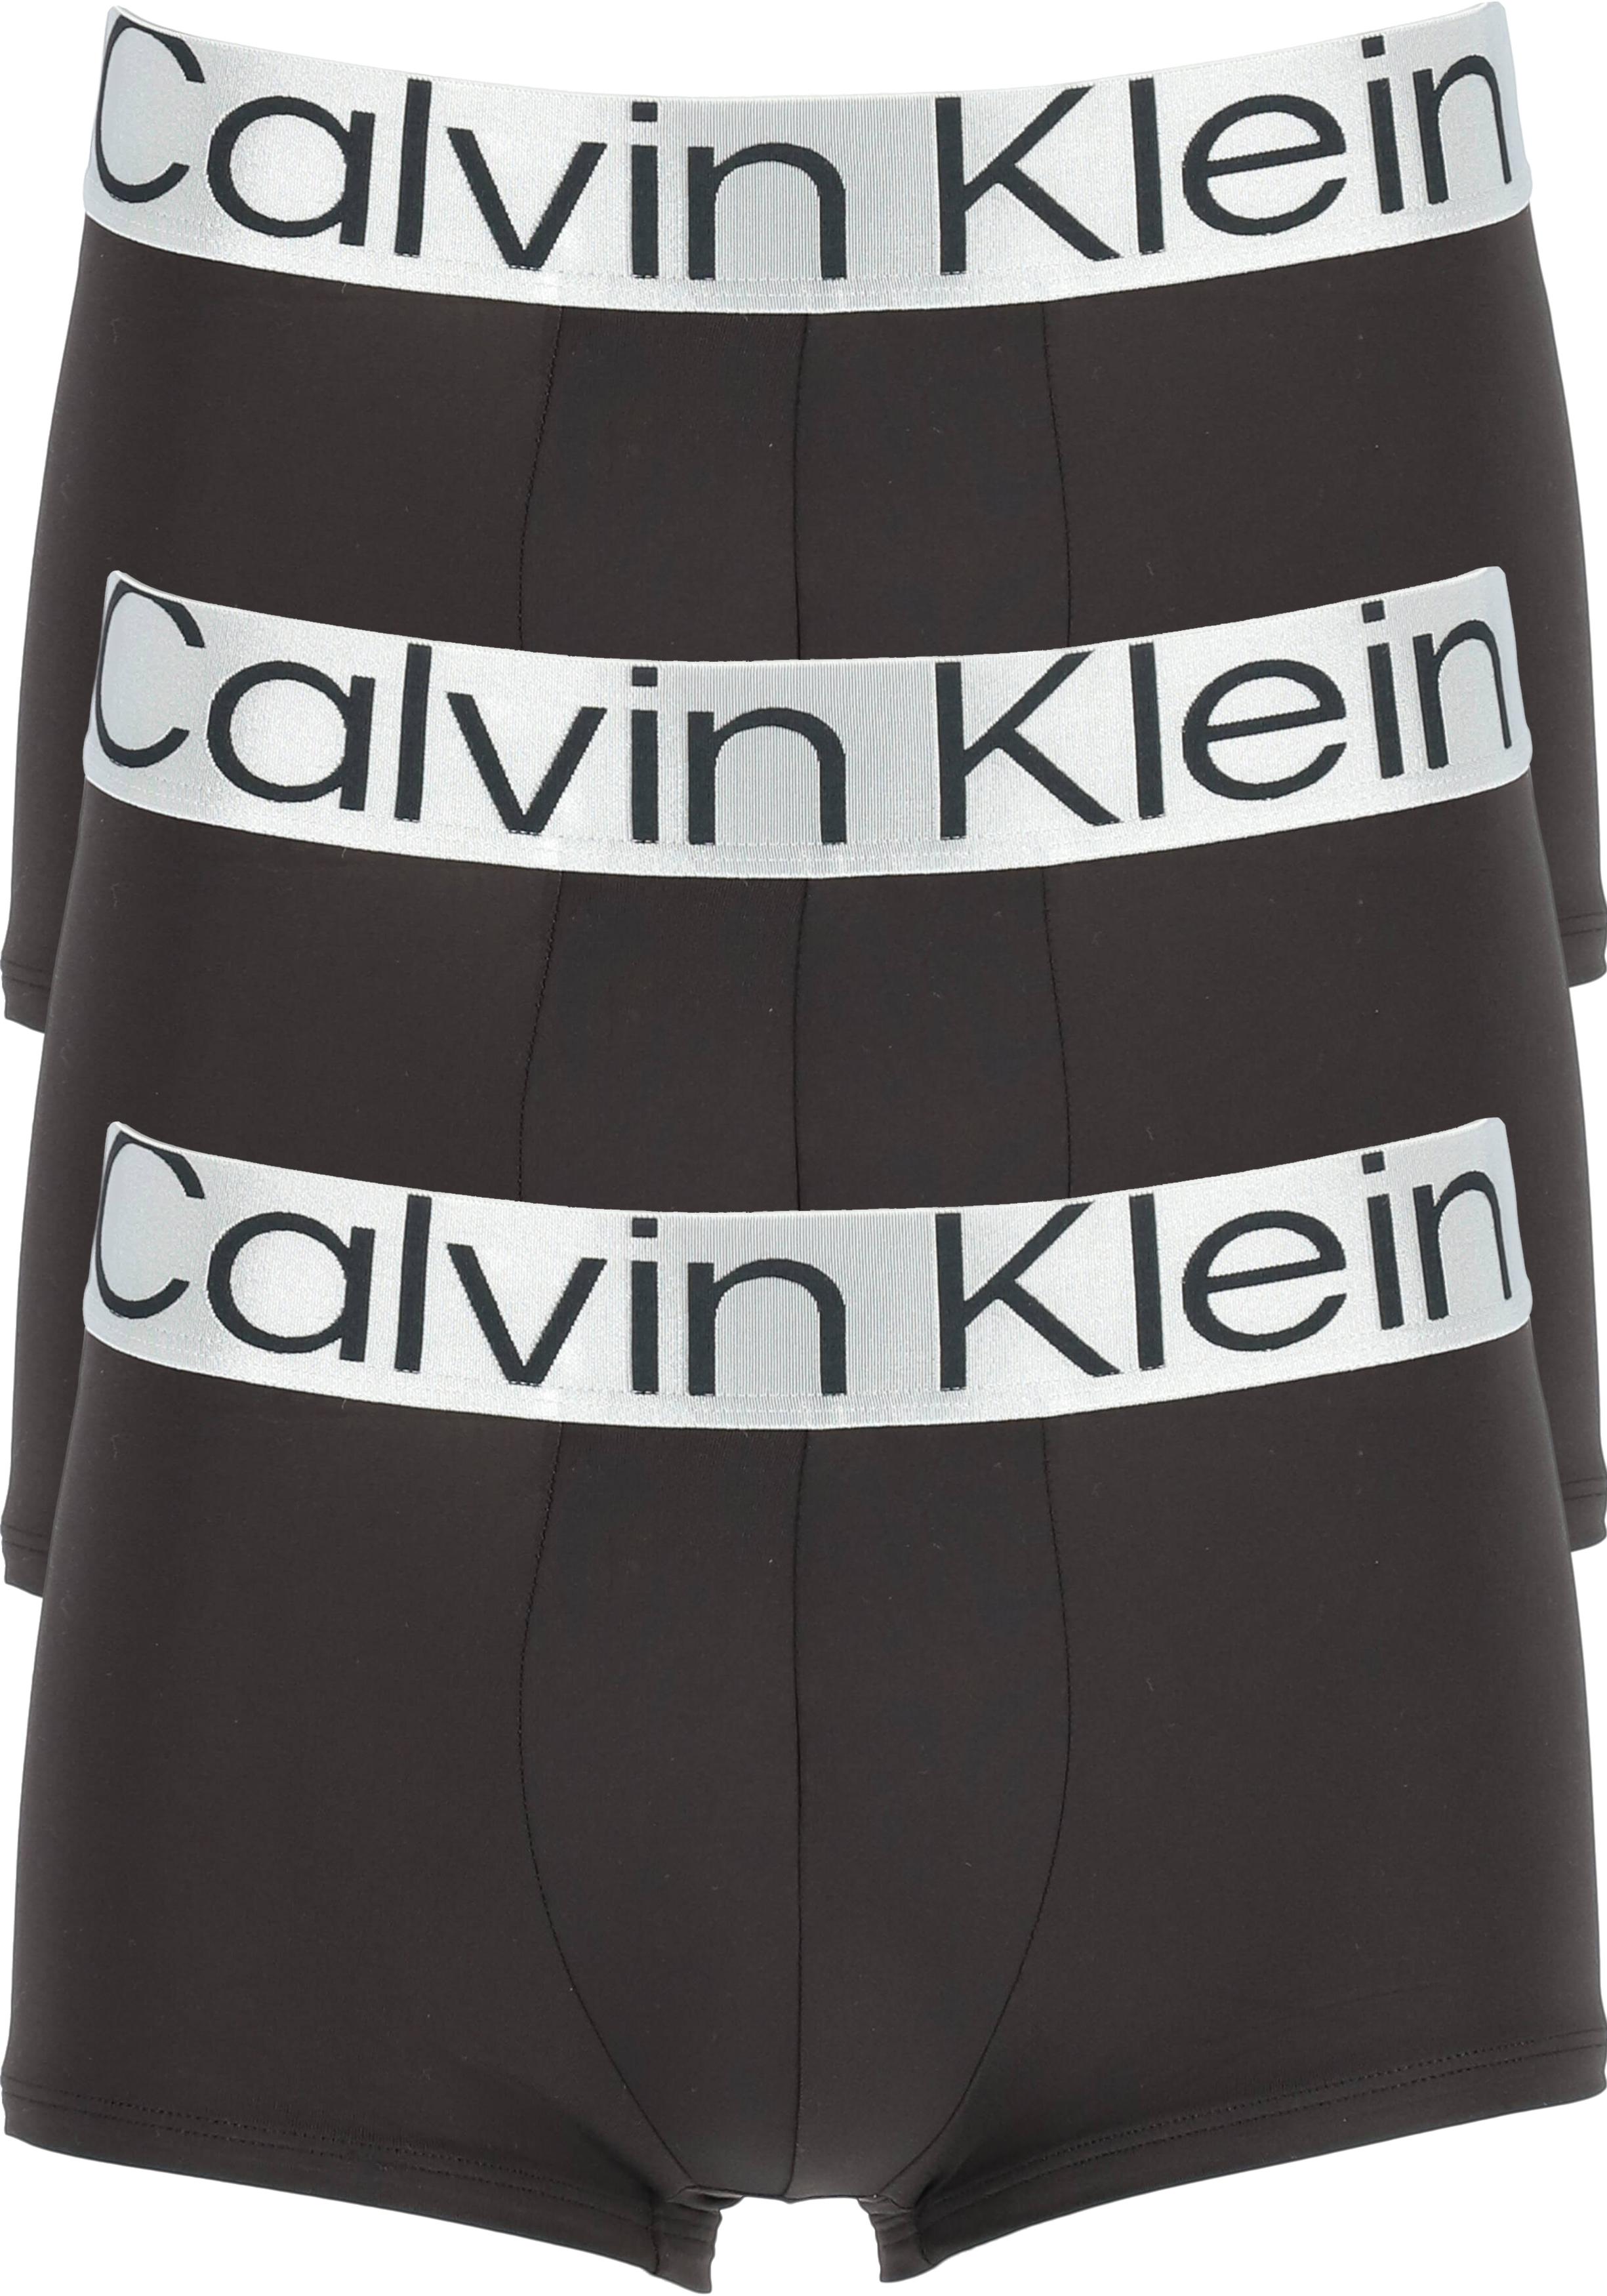 Calvin Klein low rise trunks microfiber lage heren boxers... - de nieuwste voorjaarsmode